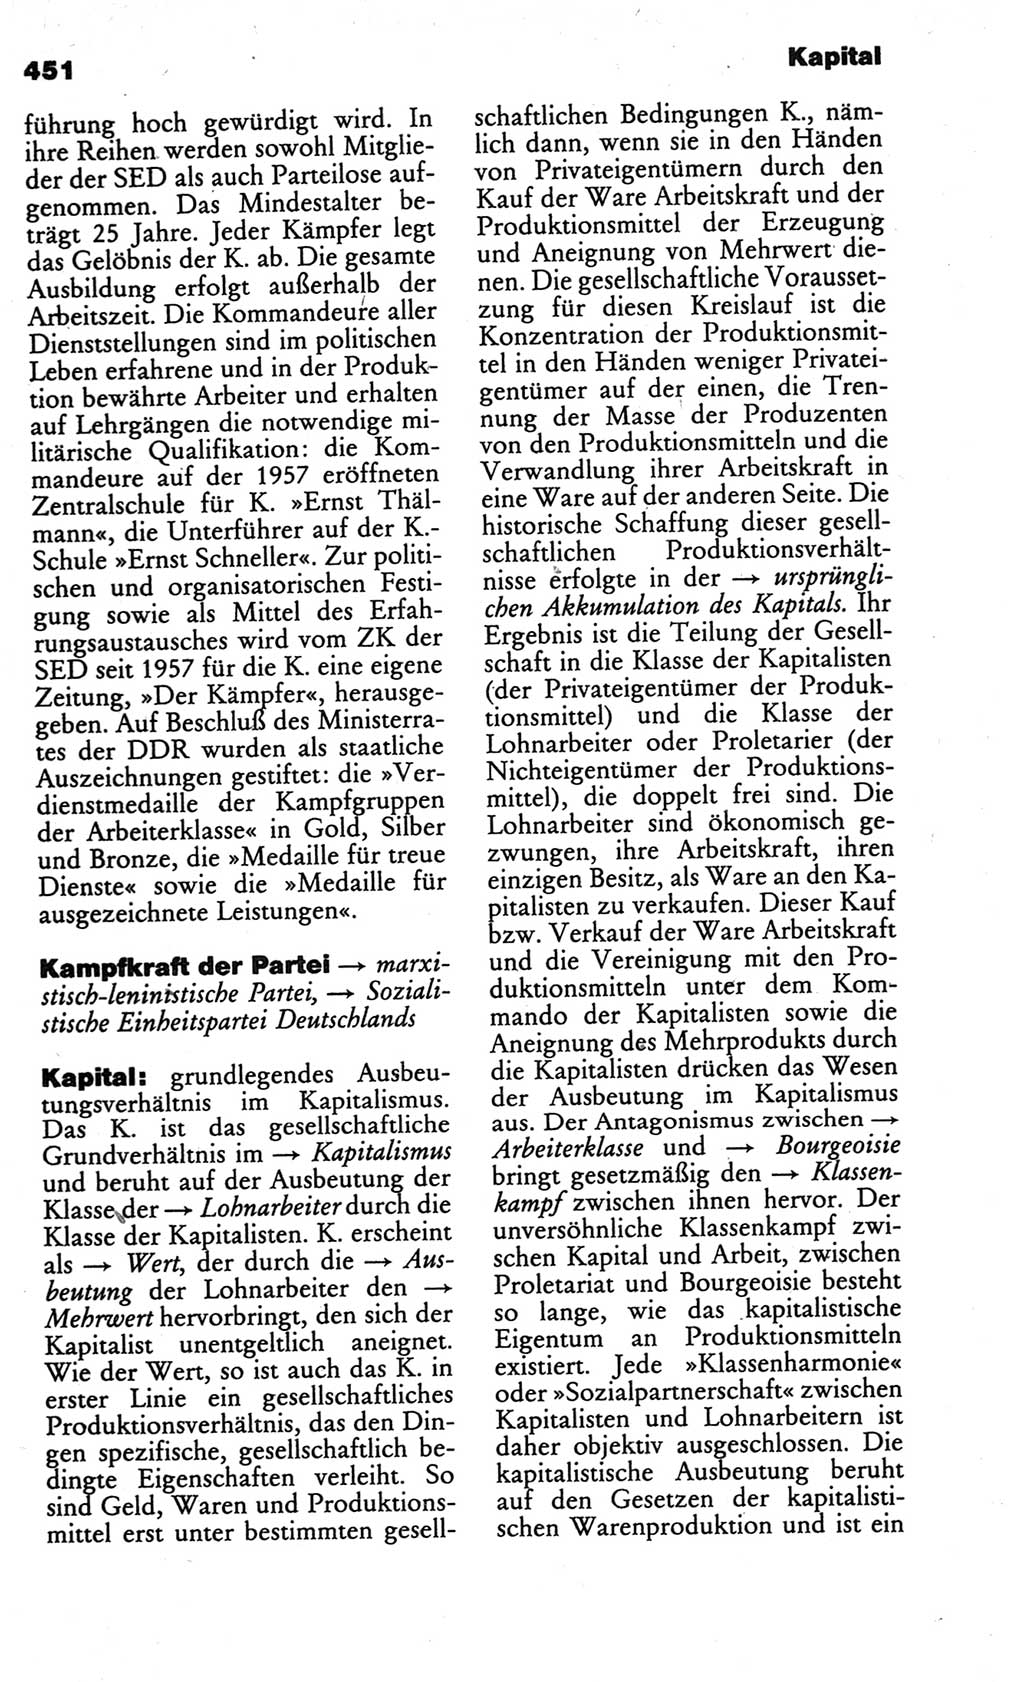 Kleines politisches Wörterbuch [Deutsche Demokratische Republik (DDR)] 1986, Seite 451 (Kl. pol. Wb. DDR 1986, S. 451)